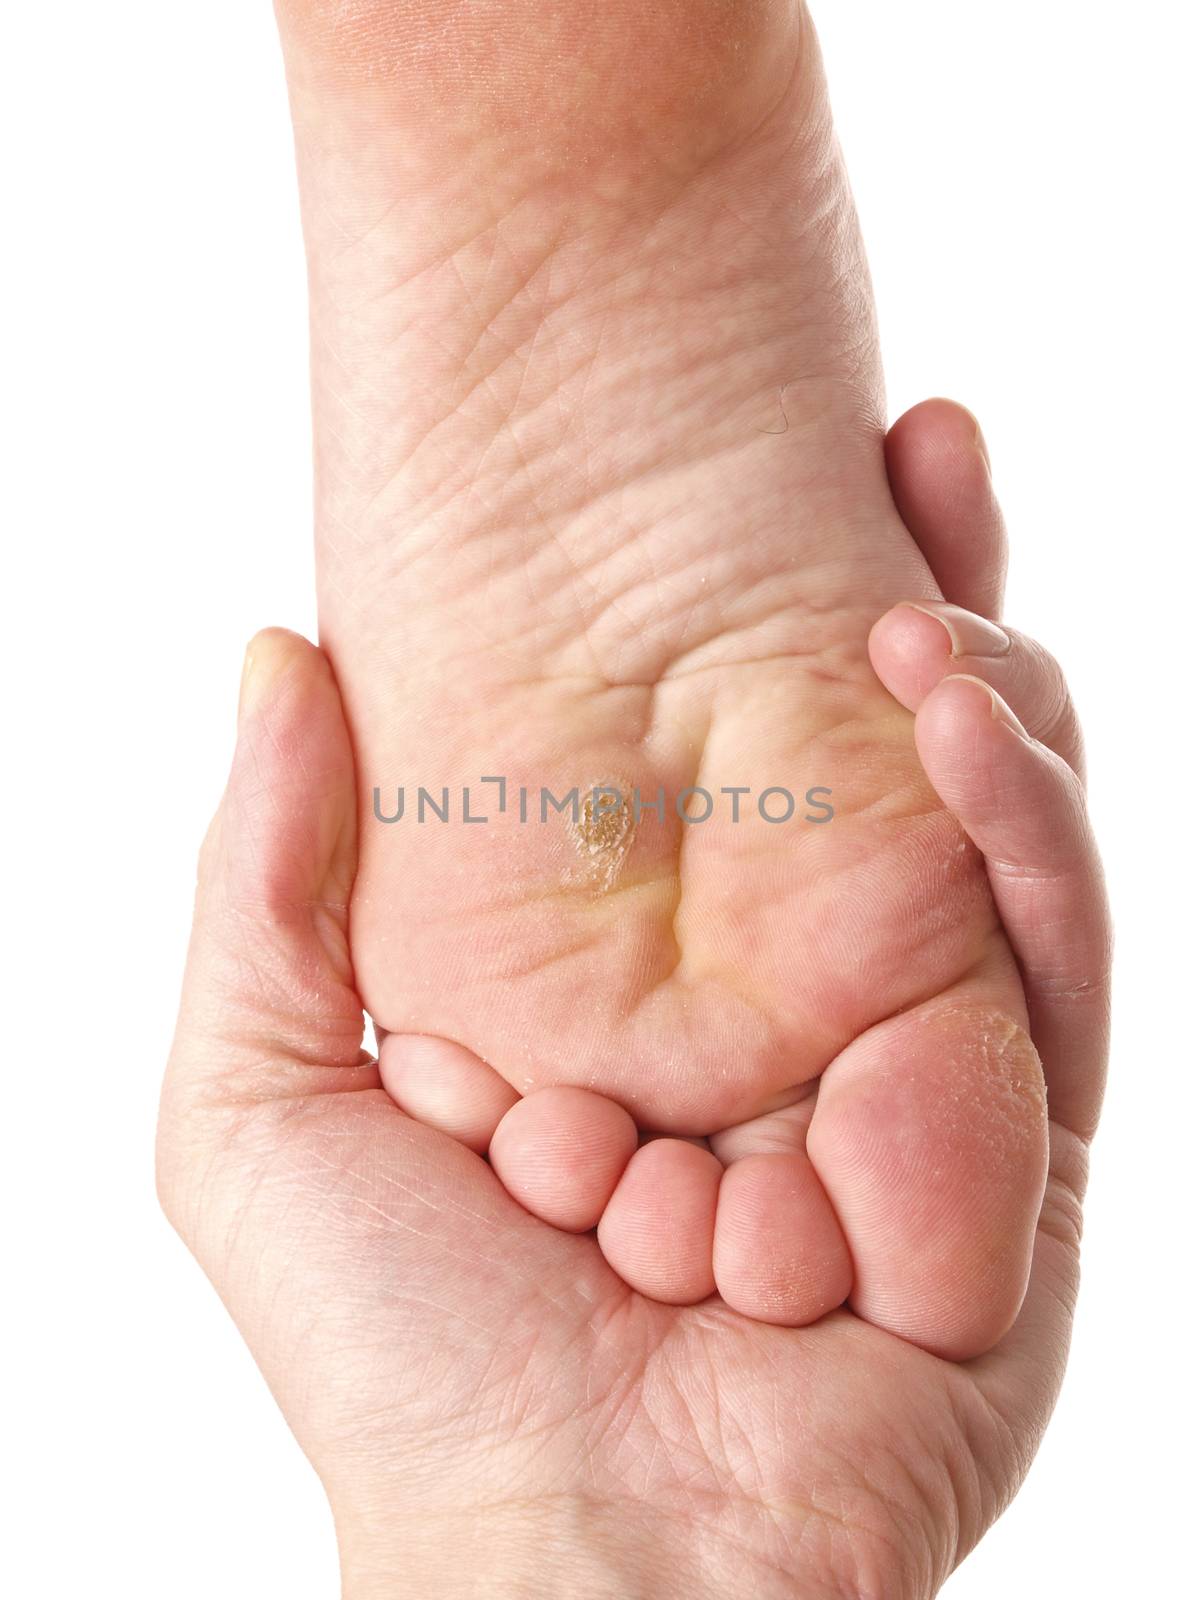 Dry skin under foot by Arvebettum